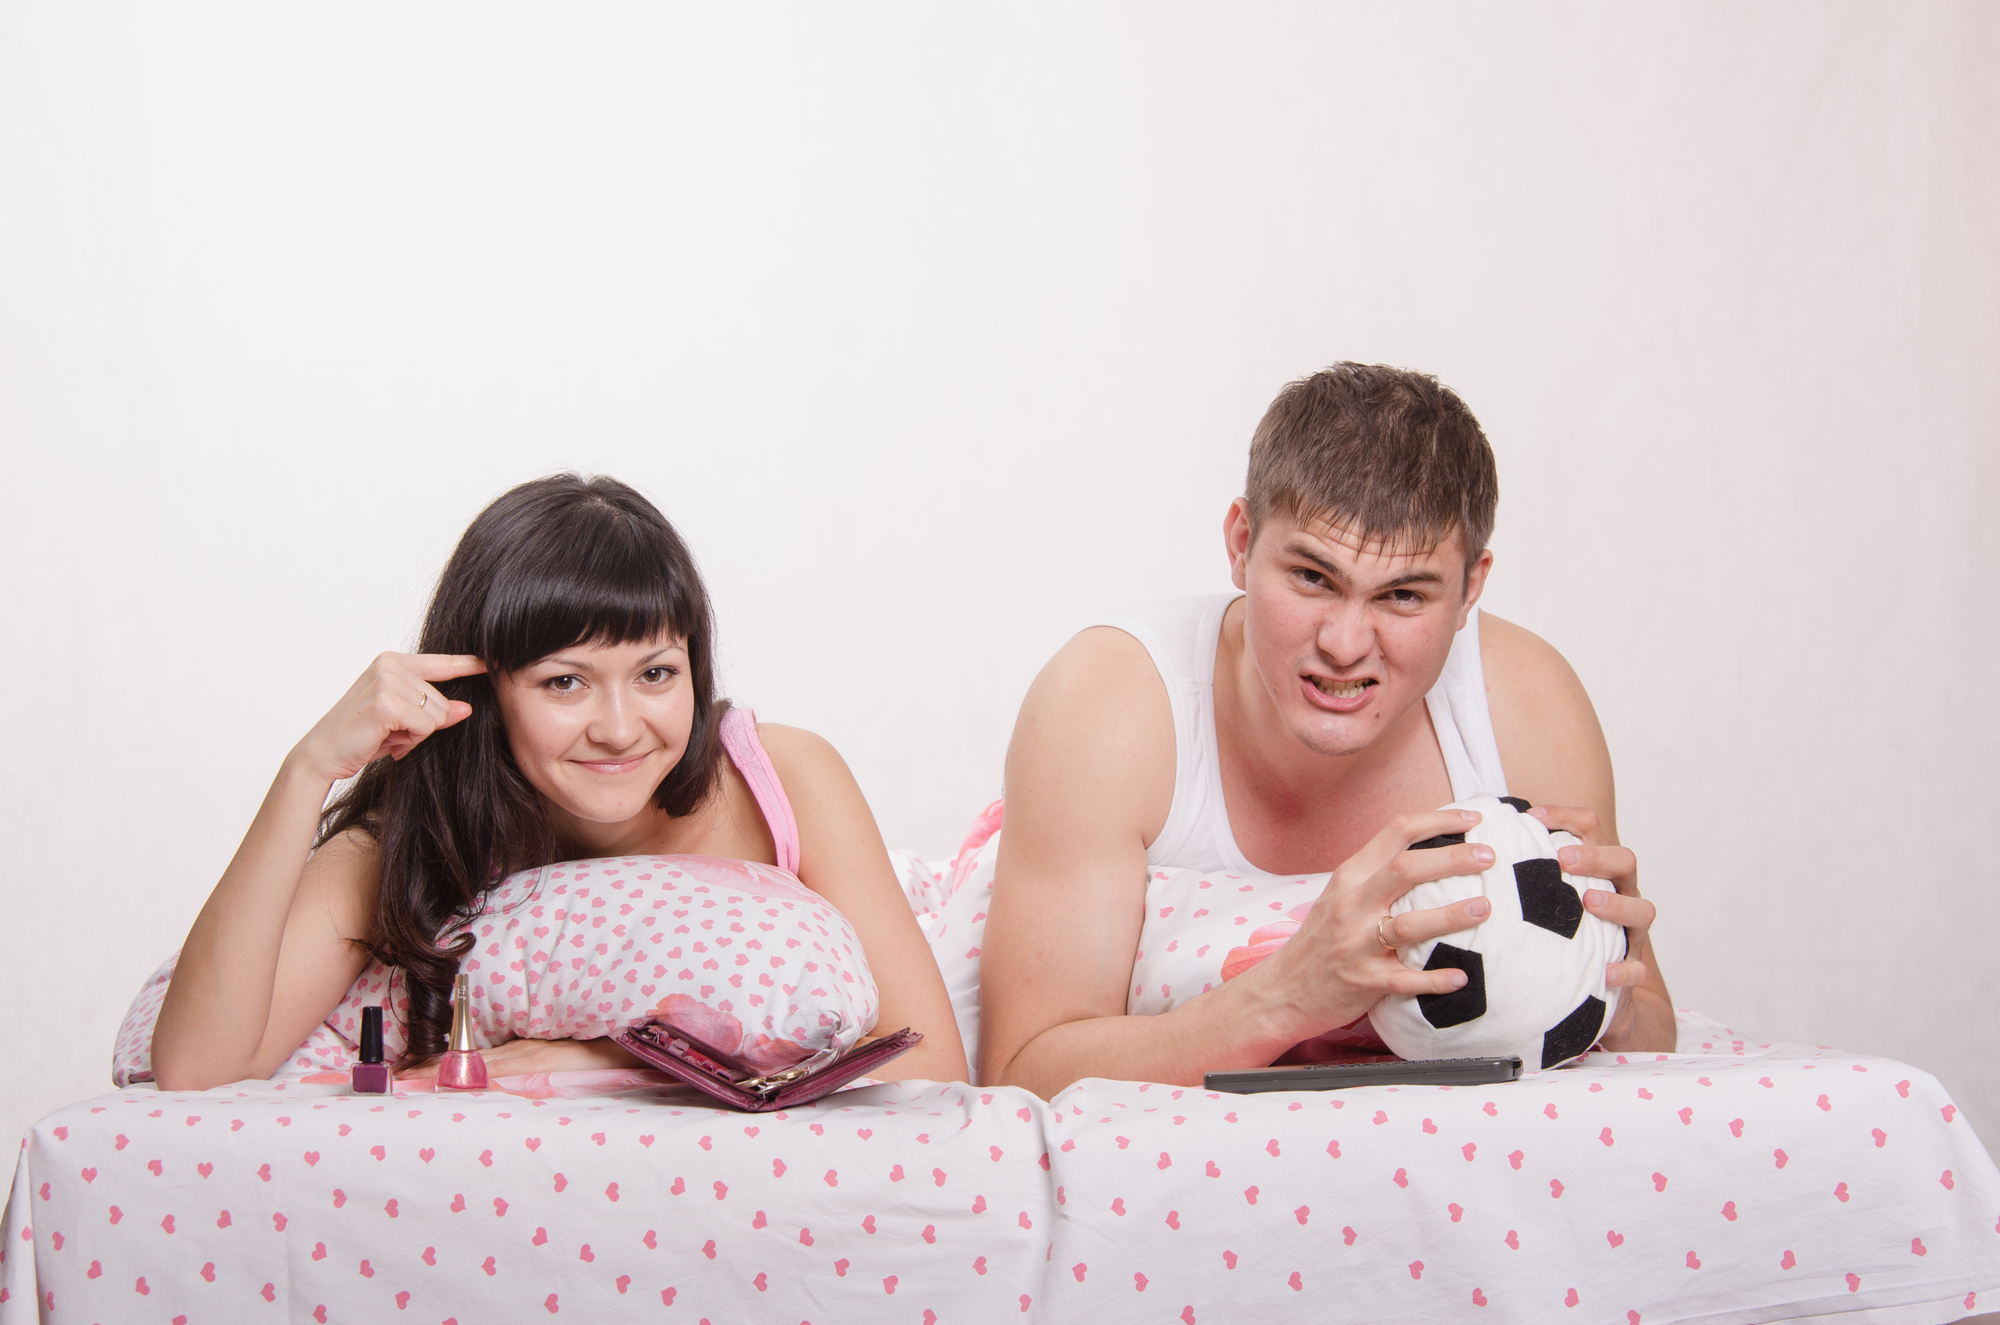 Муж с женой пришли в клуб. Семья болеет за футбол. Фото семьи болеющая за футбол. Футбольный фанат у телевизора.